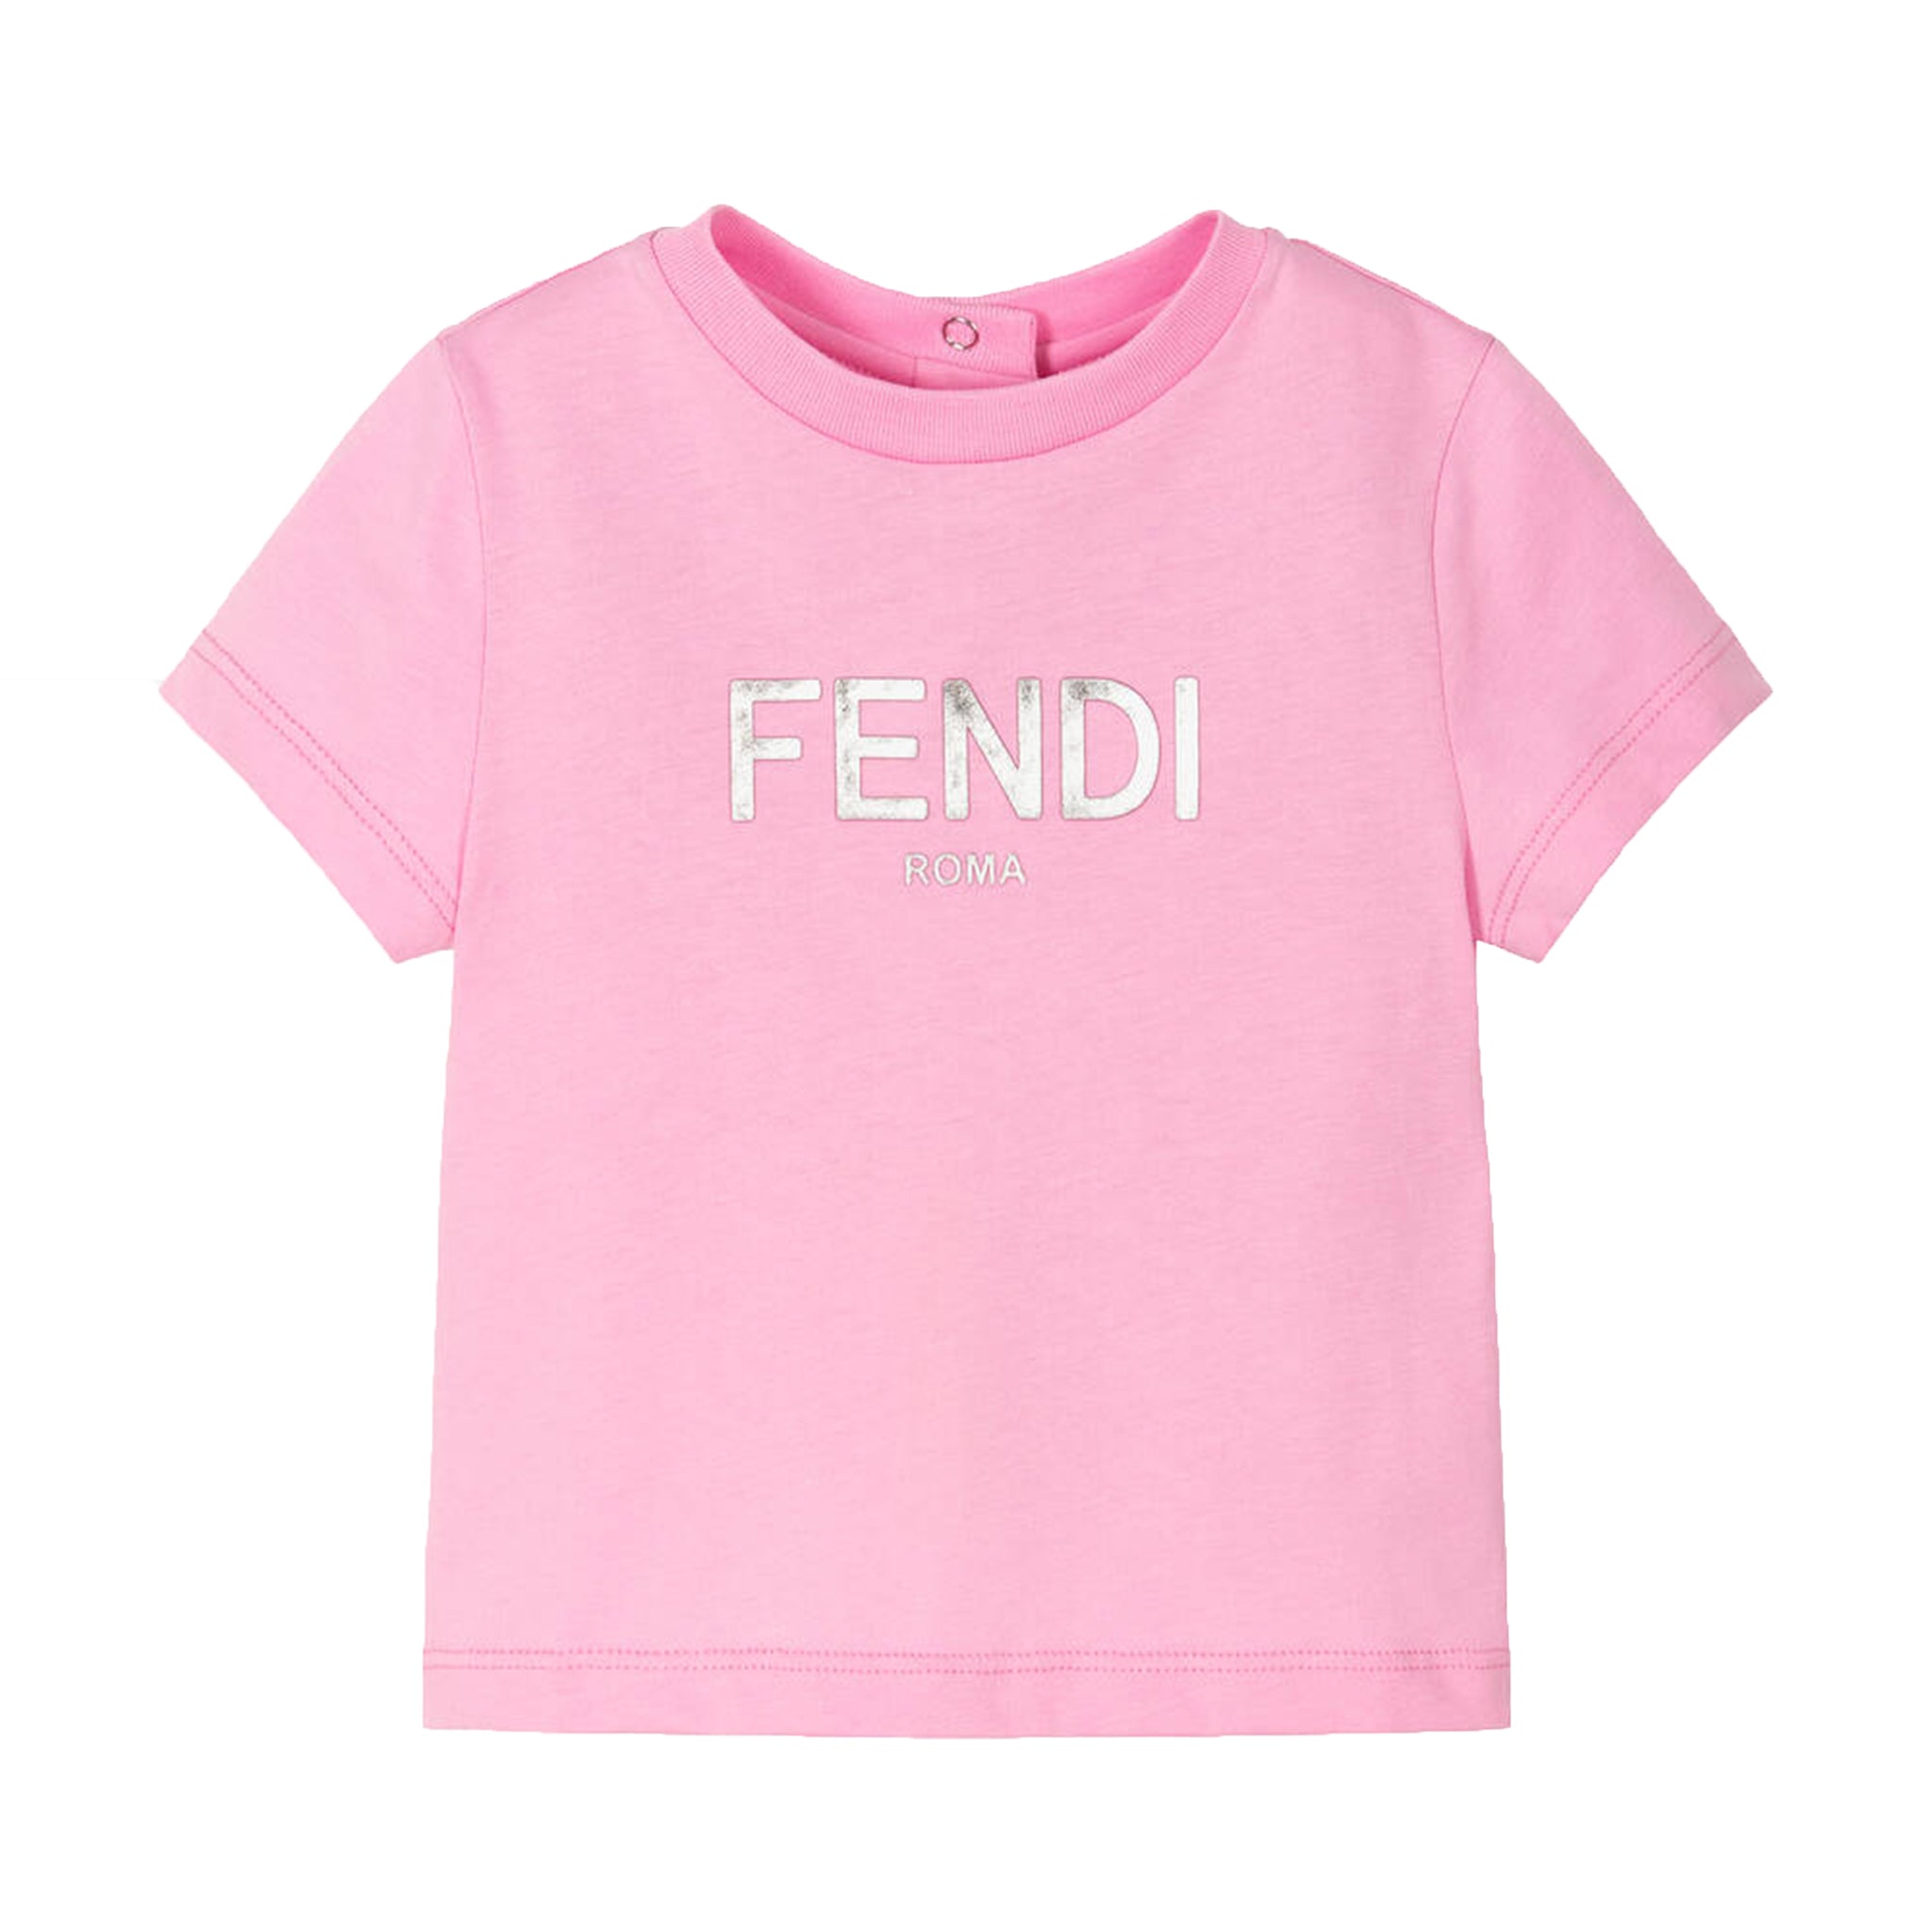 Fendi Baby Girls Logo Print T-shirt Pink